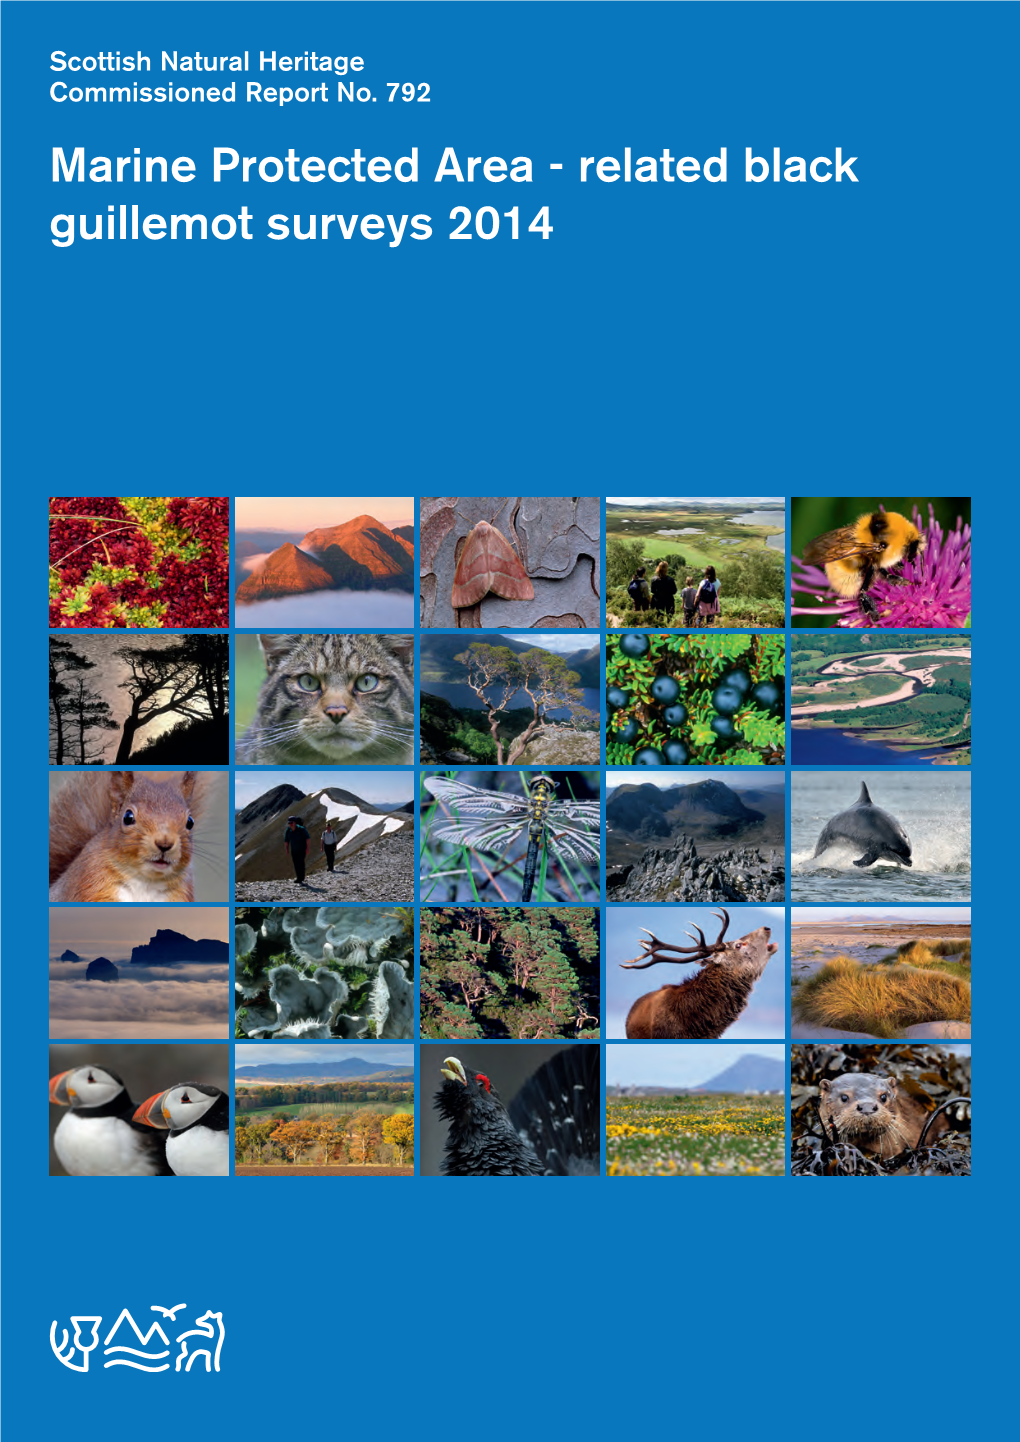 Related Black Guillemot Surveys 2014